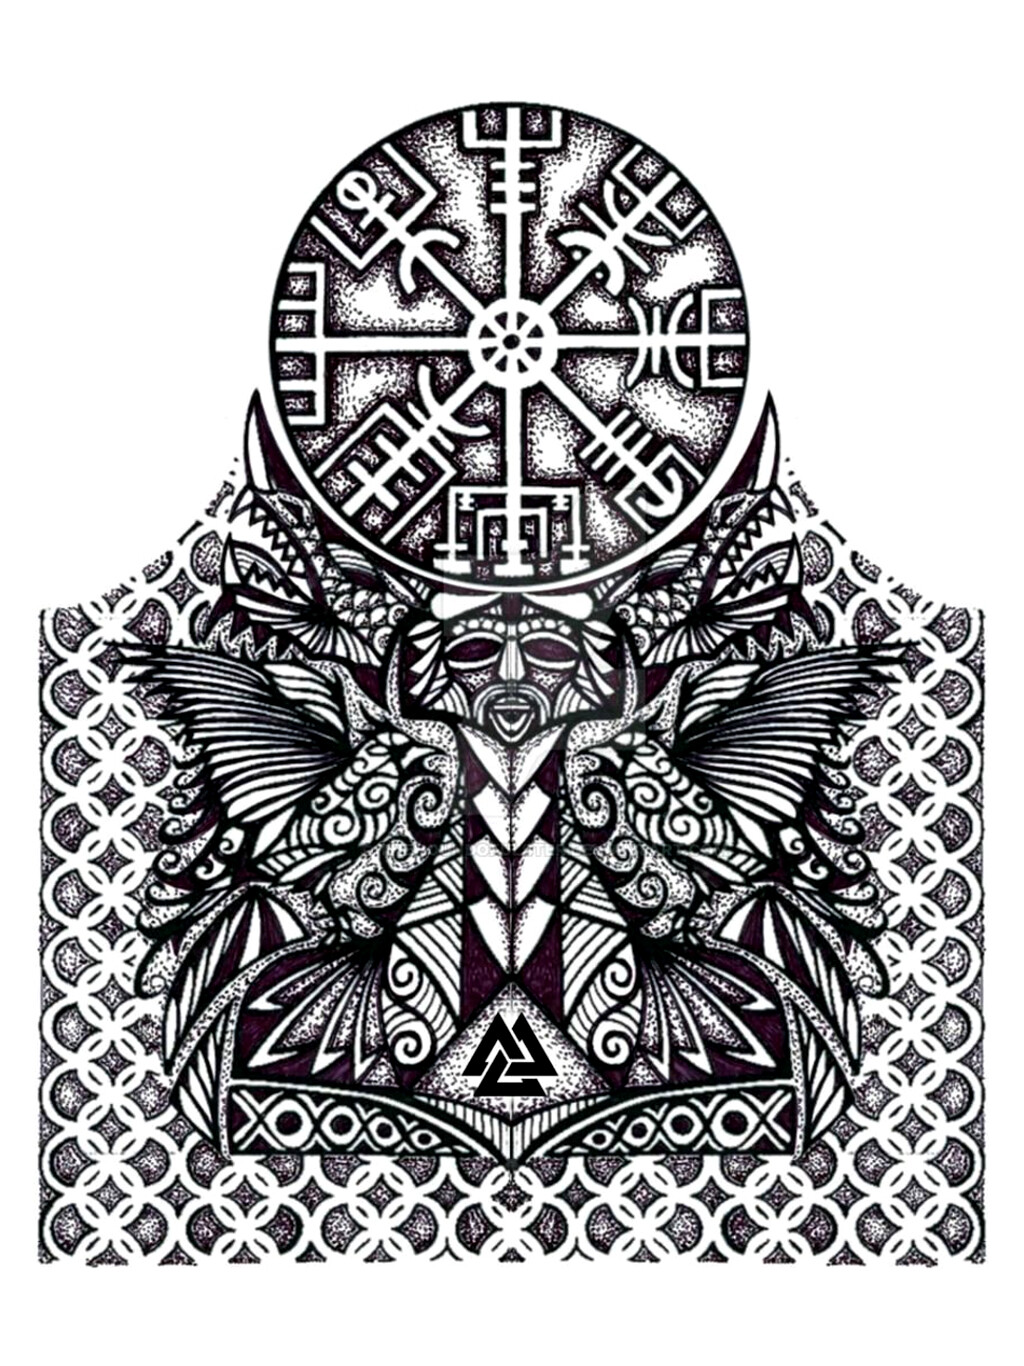 ArtStation - Viking half sleeve tattoo